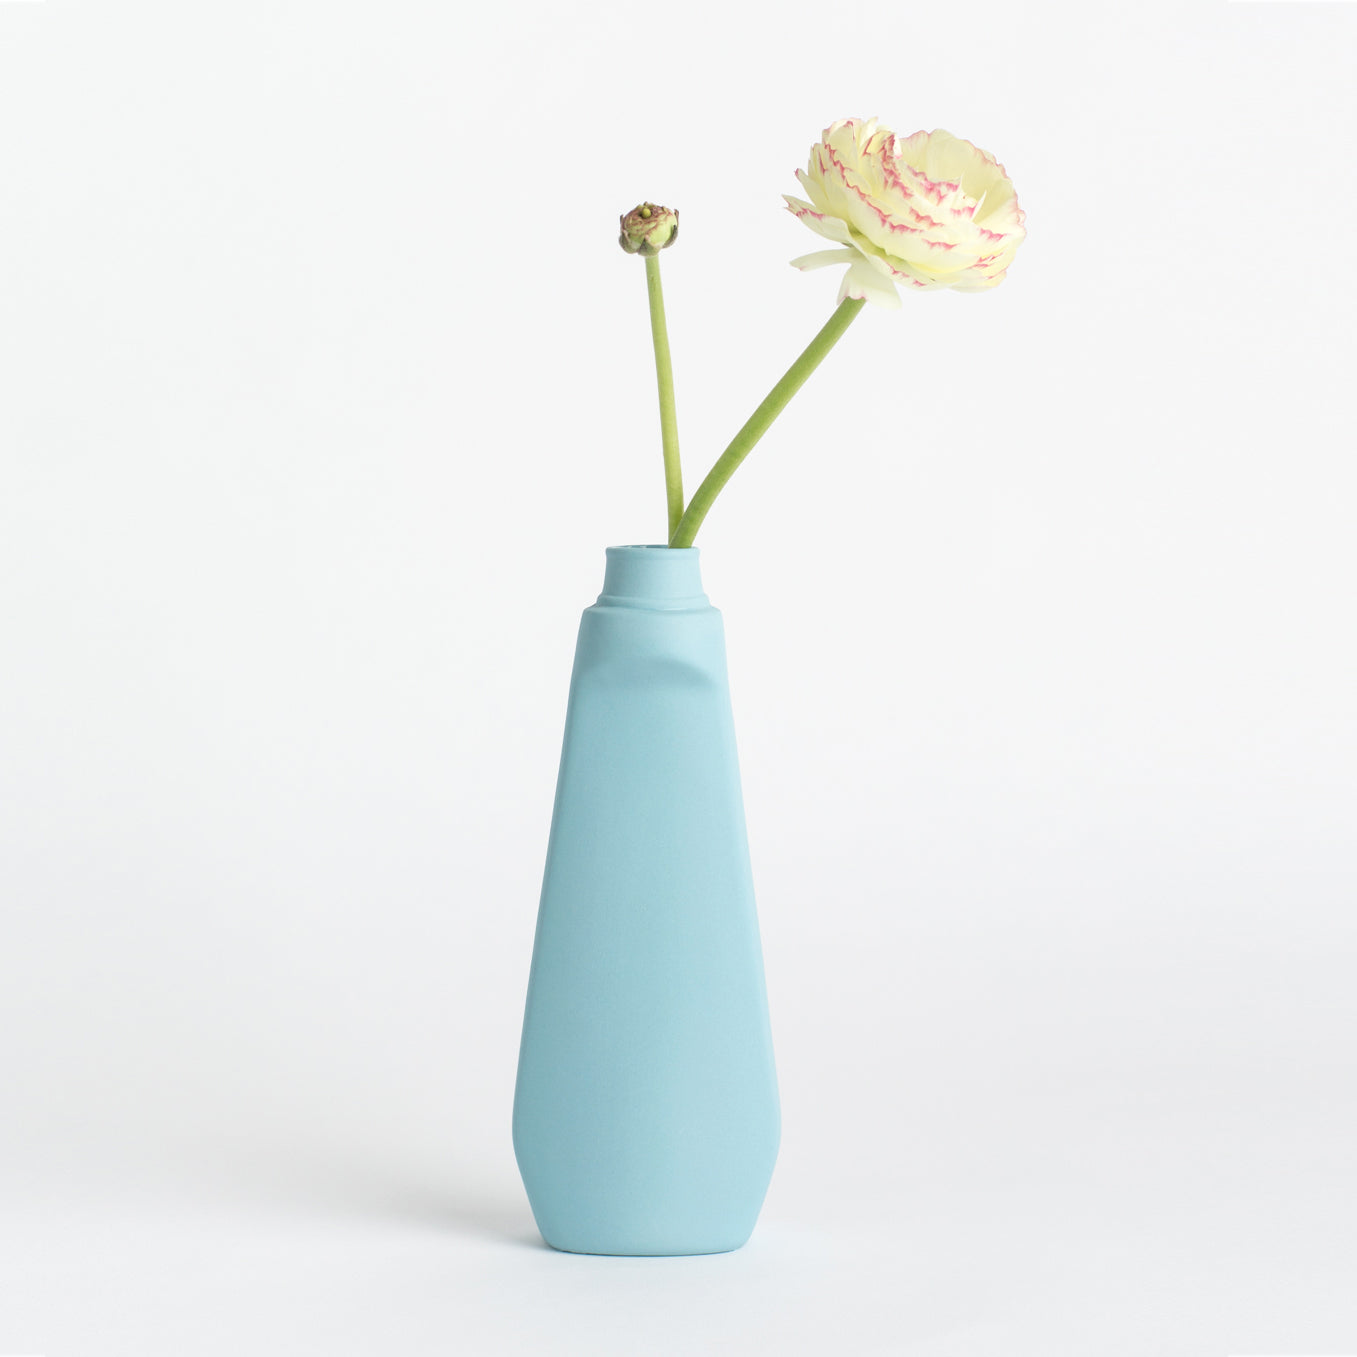 Porzellan-Vase #4 von Foekje Fleur bei Wilhelm die 3.